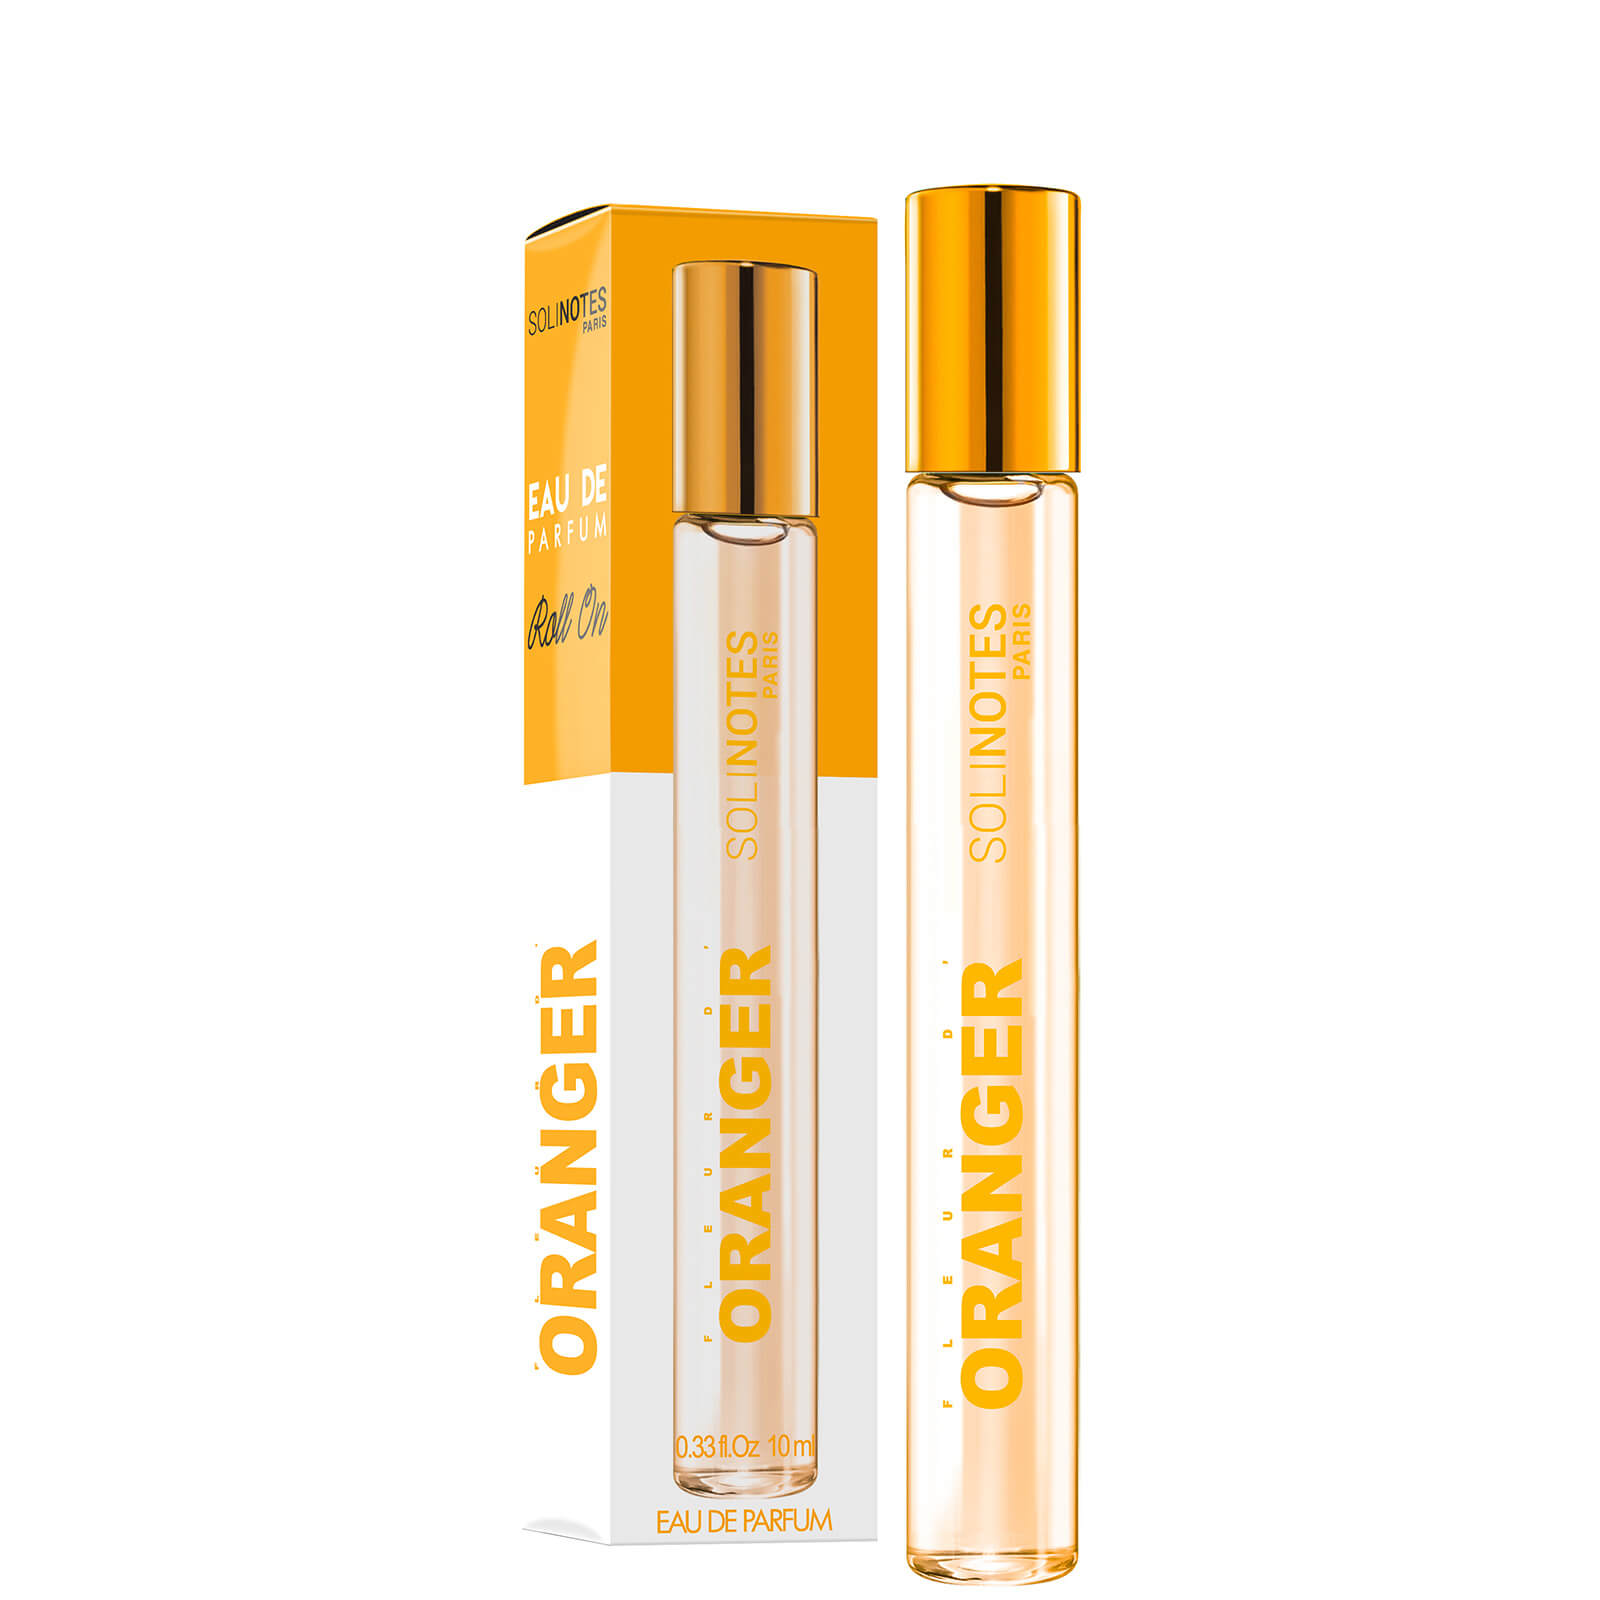 Solinotes Eau De Parfum Roll-on - Orange Blossom 0.33 oz